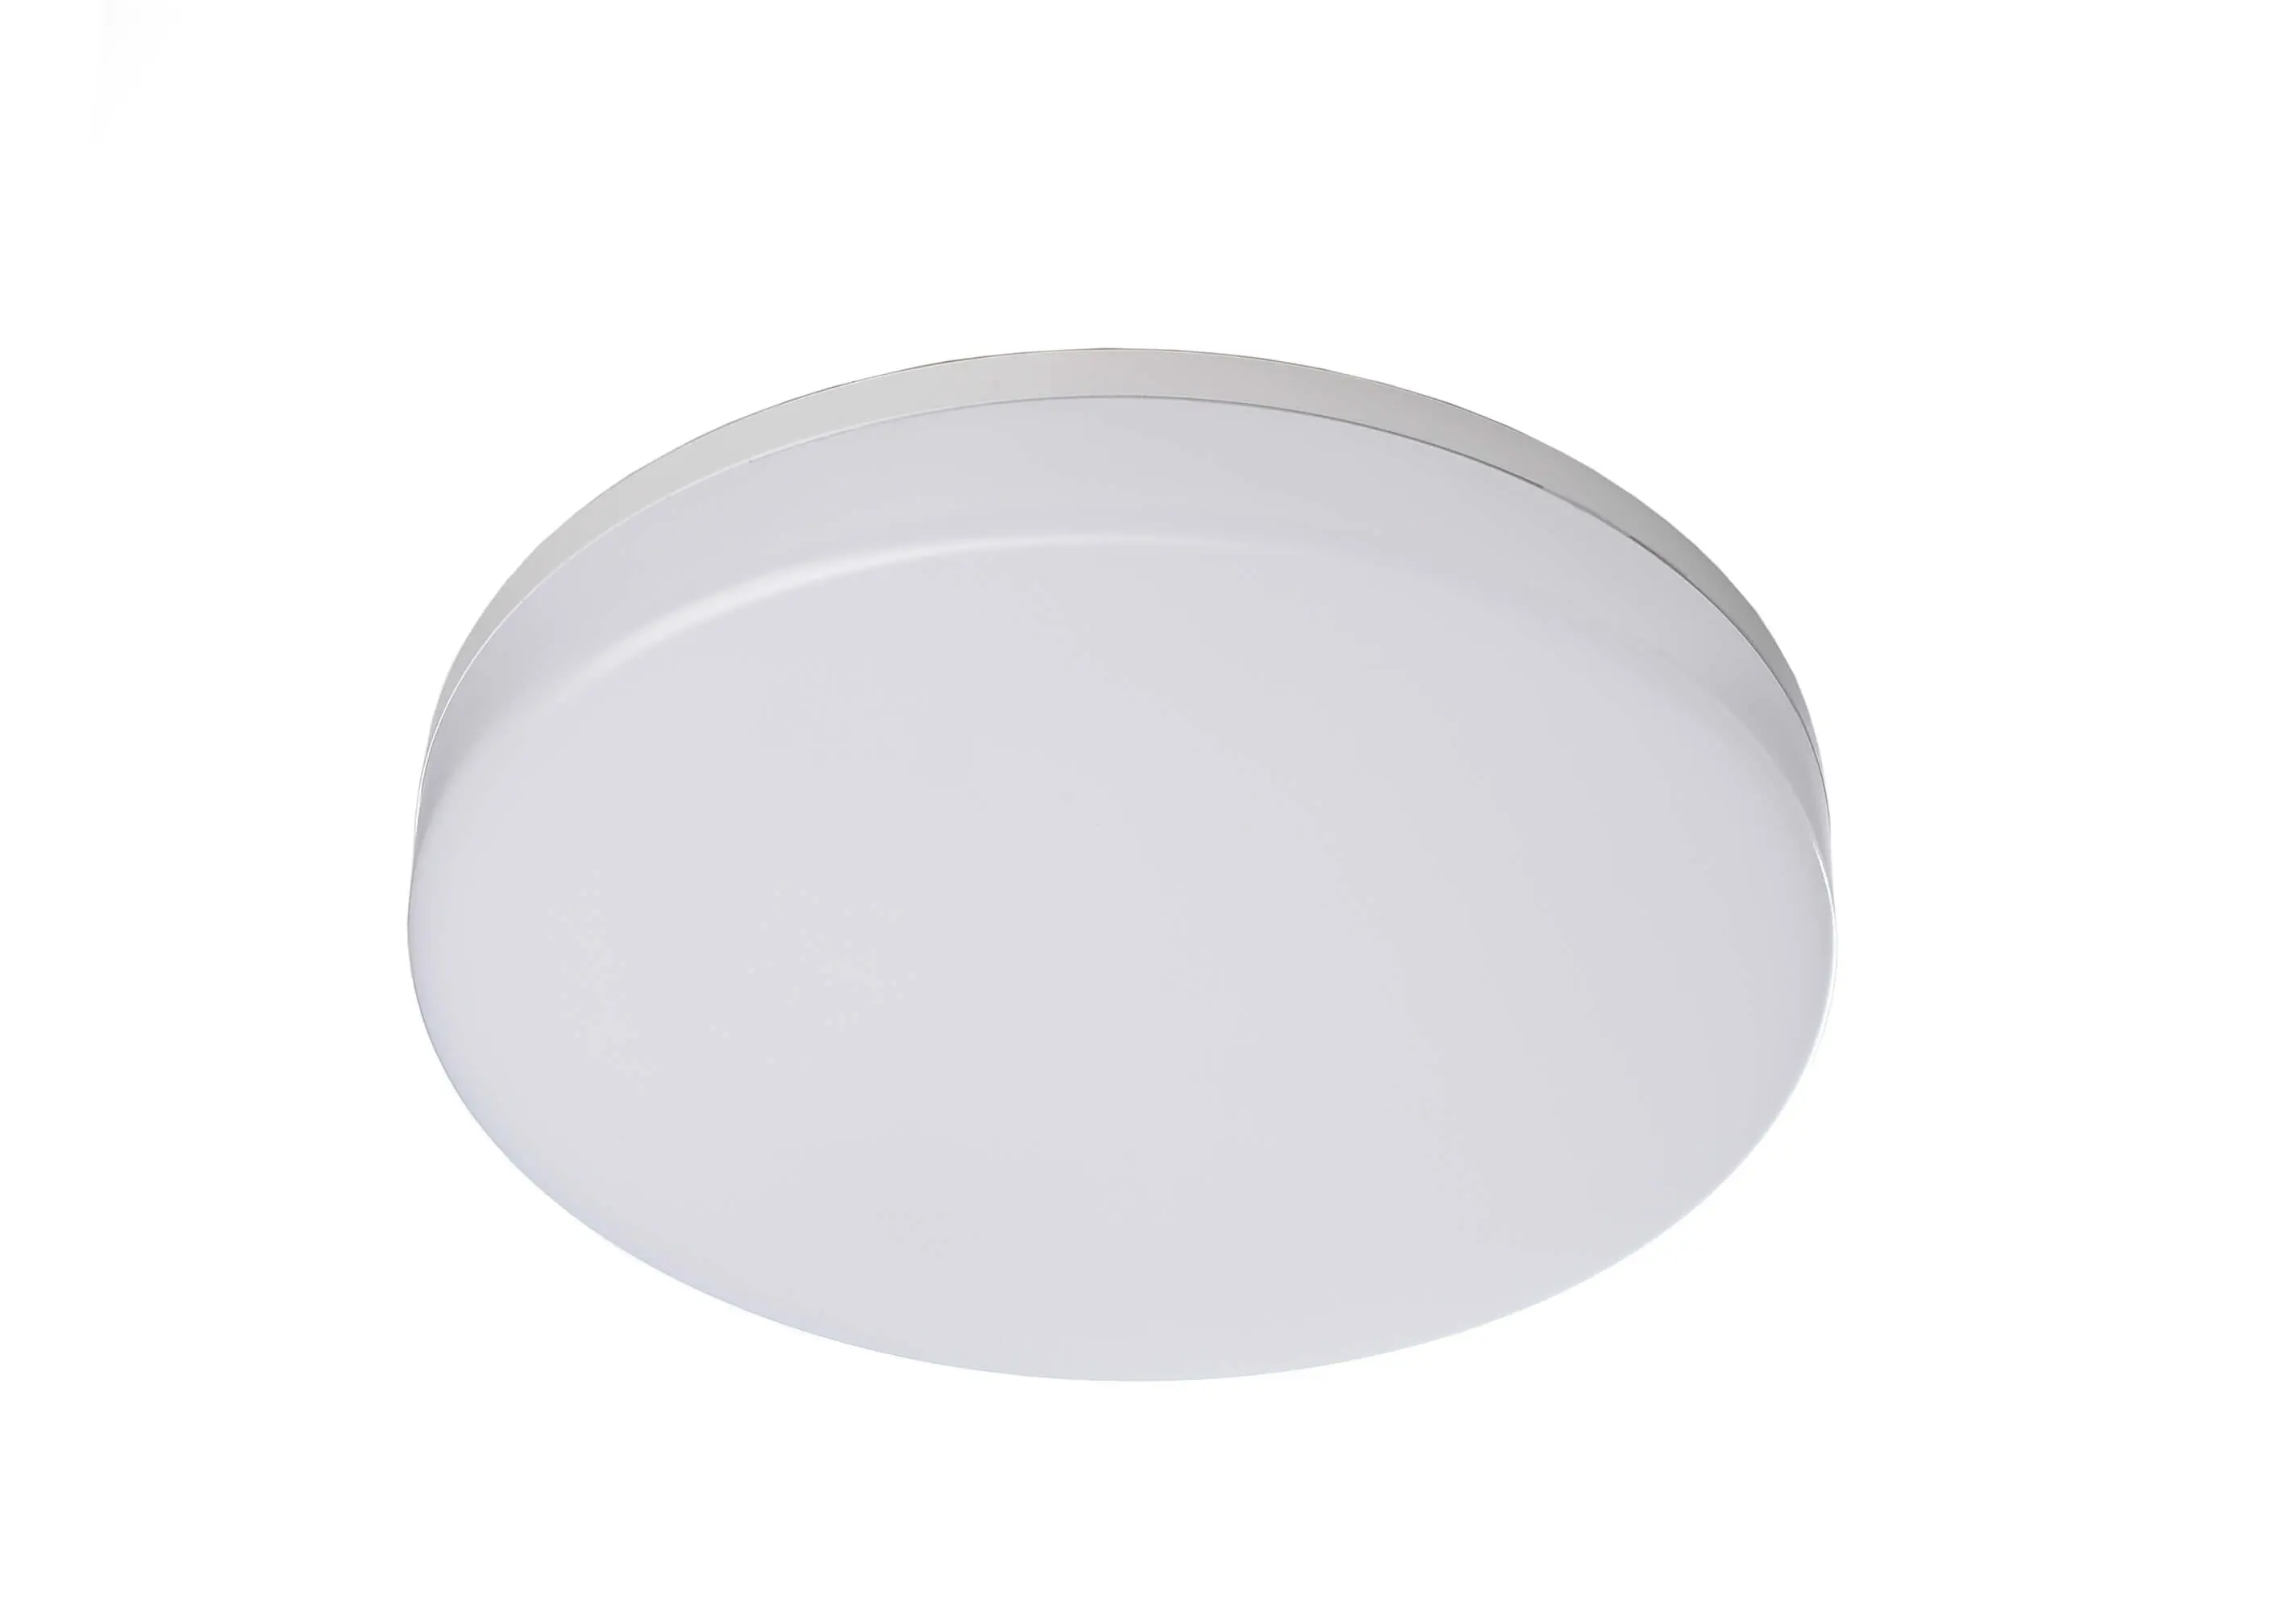 LED-Deckenlampe Altais Deluxe mit Sensor in weiß, Ø 22cm